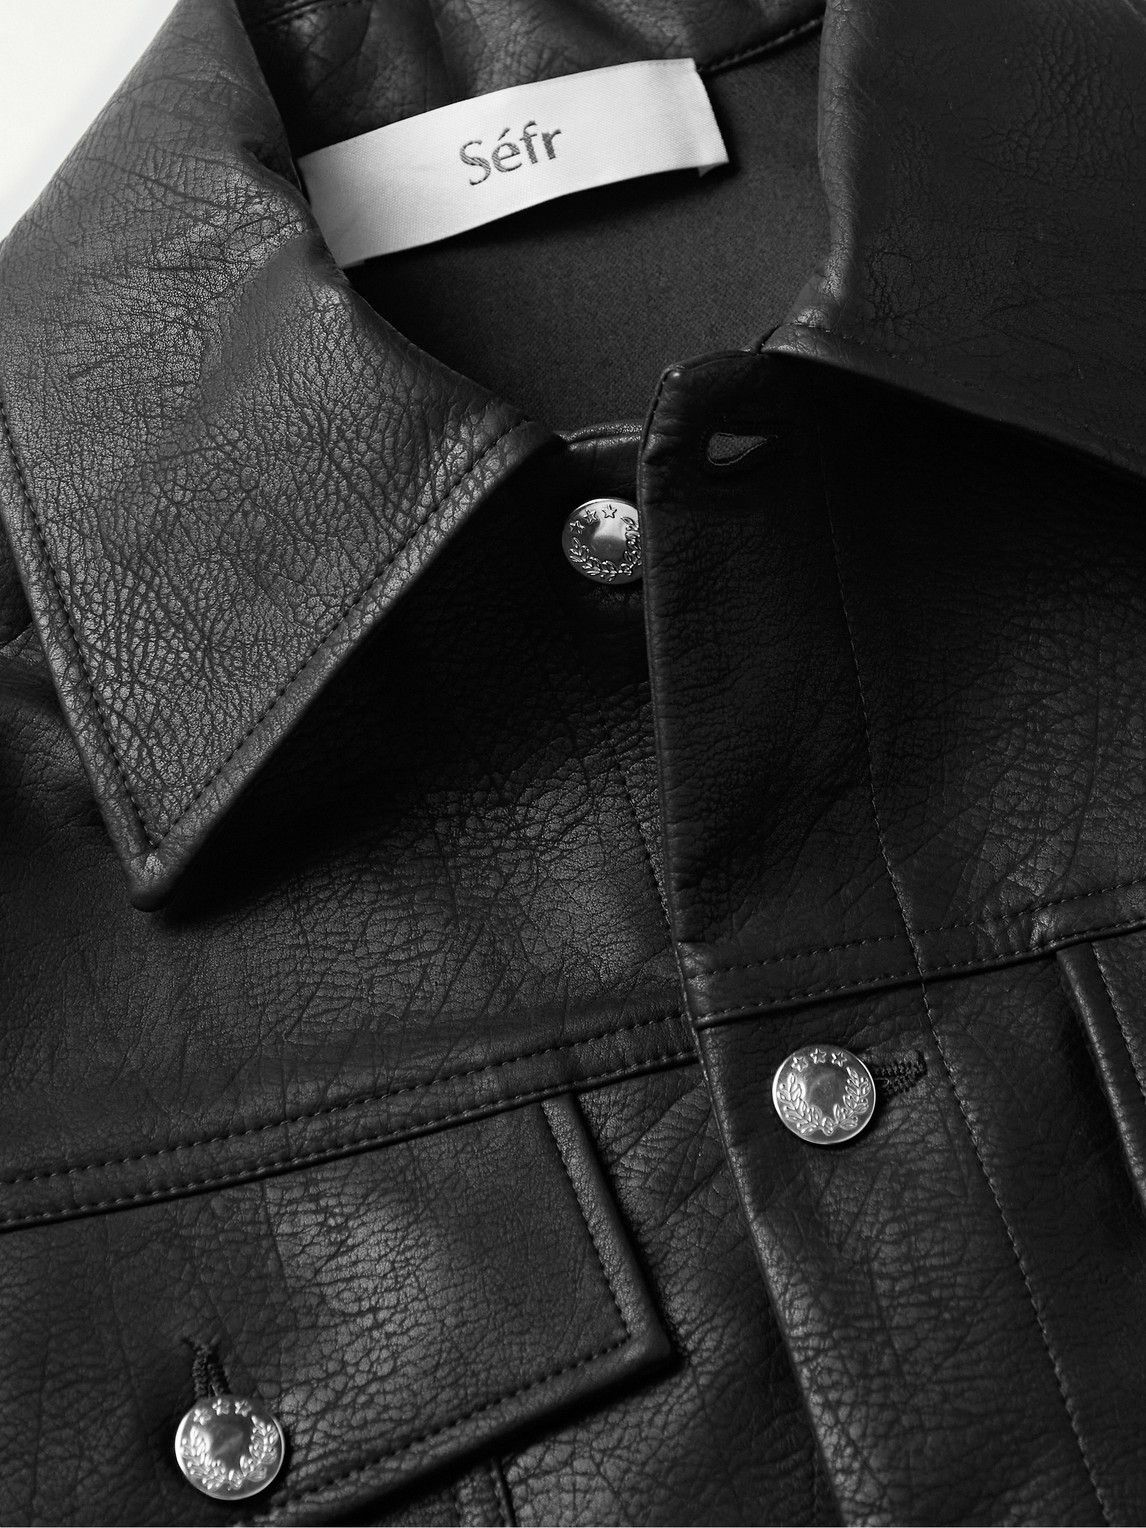 Séfr - Dante Faux Leather Jacket - Black Séfr